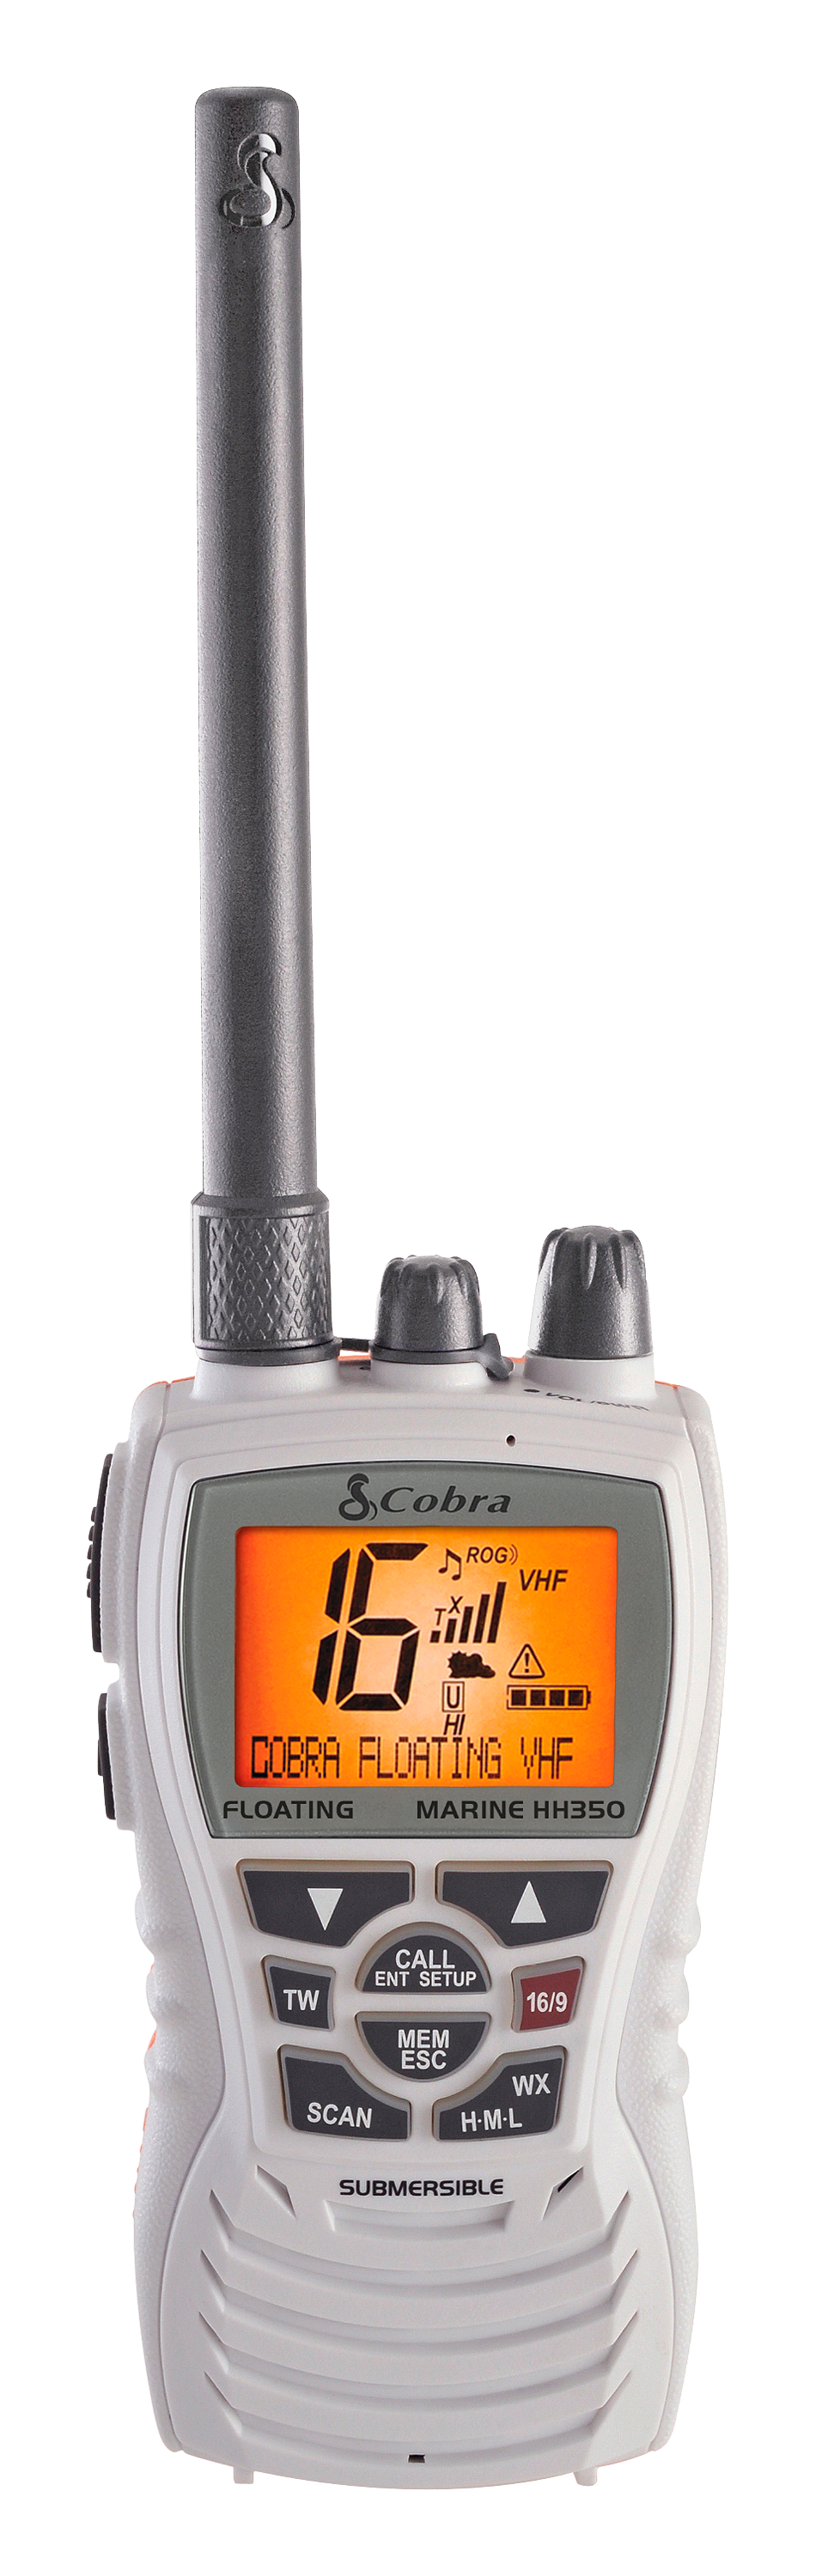 Cobra MRHH350 FLT Floating VHF Handheld Marine Radio Bass Pro Shops